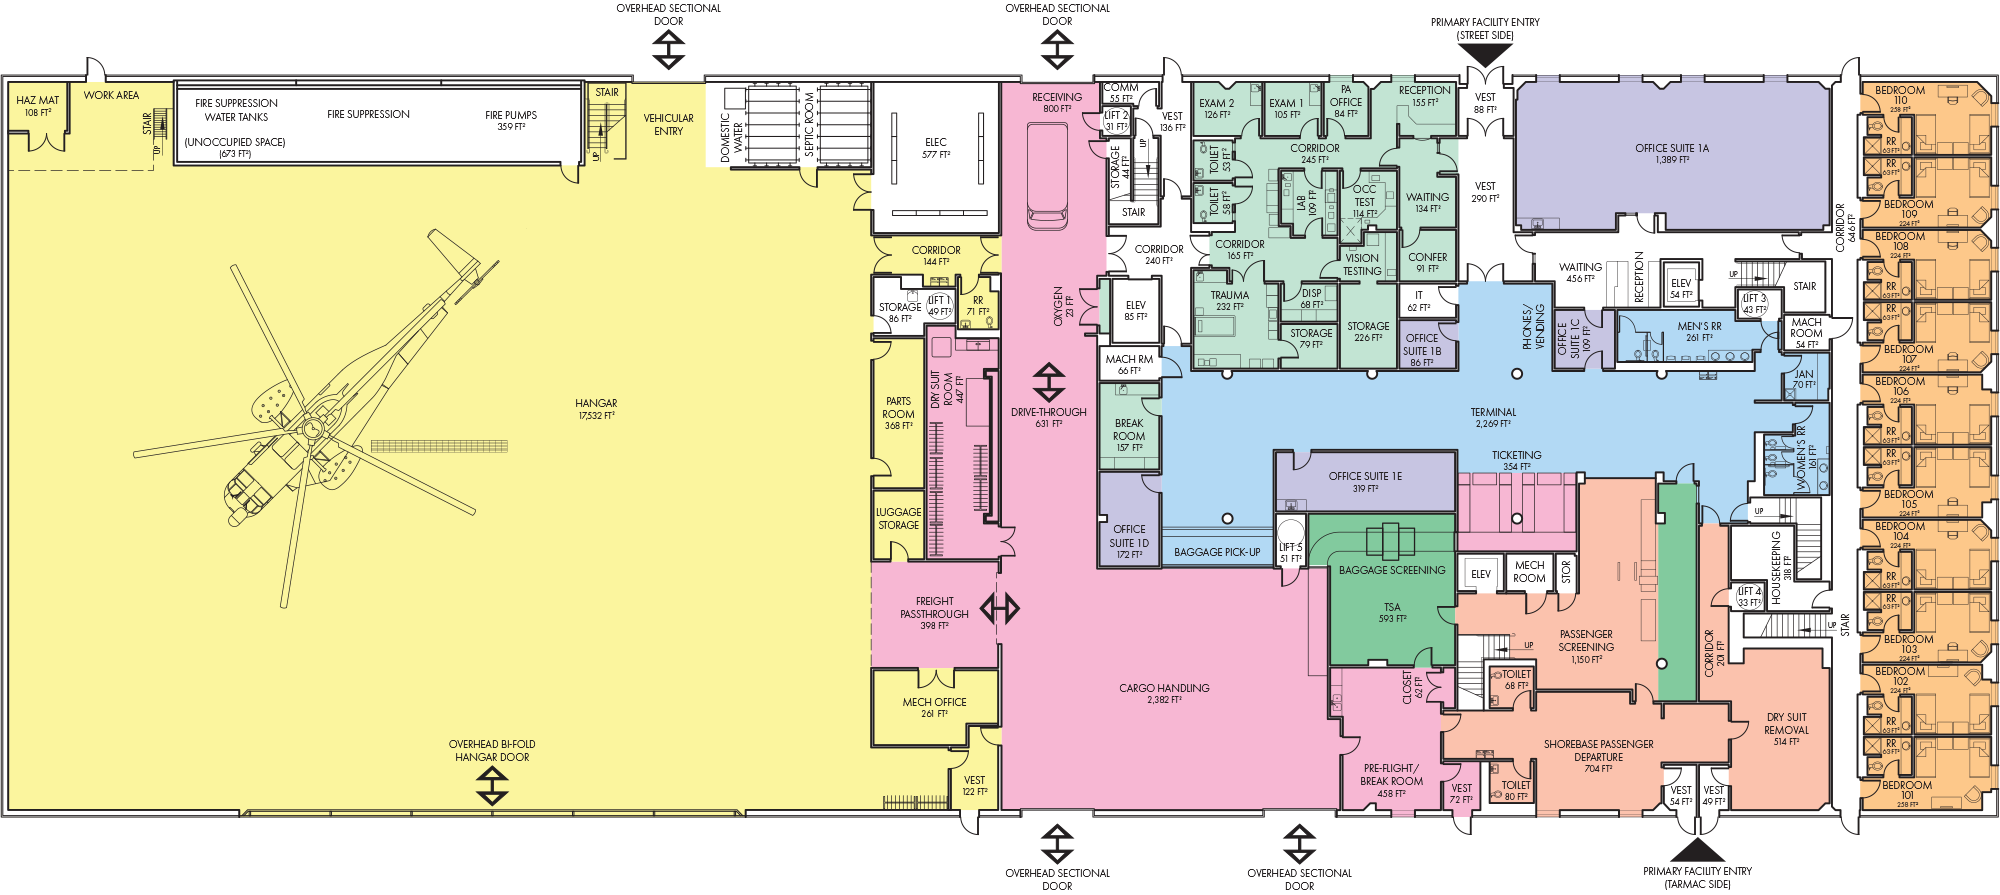 Deadhorse Aviation Center floor plans, level 1